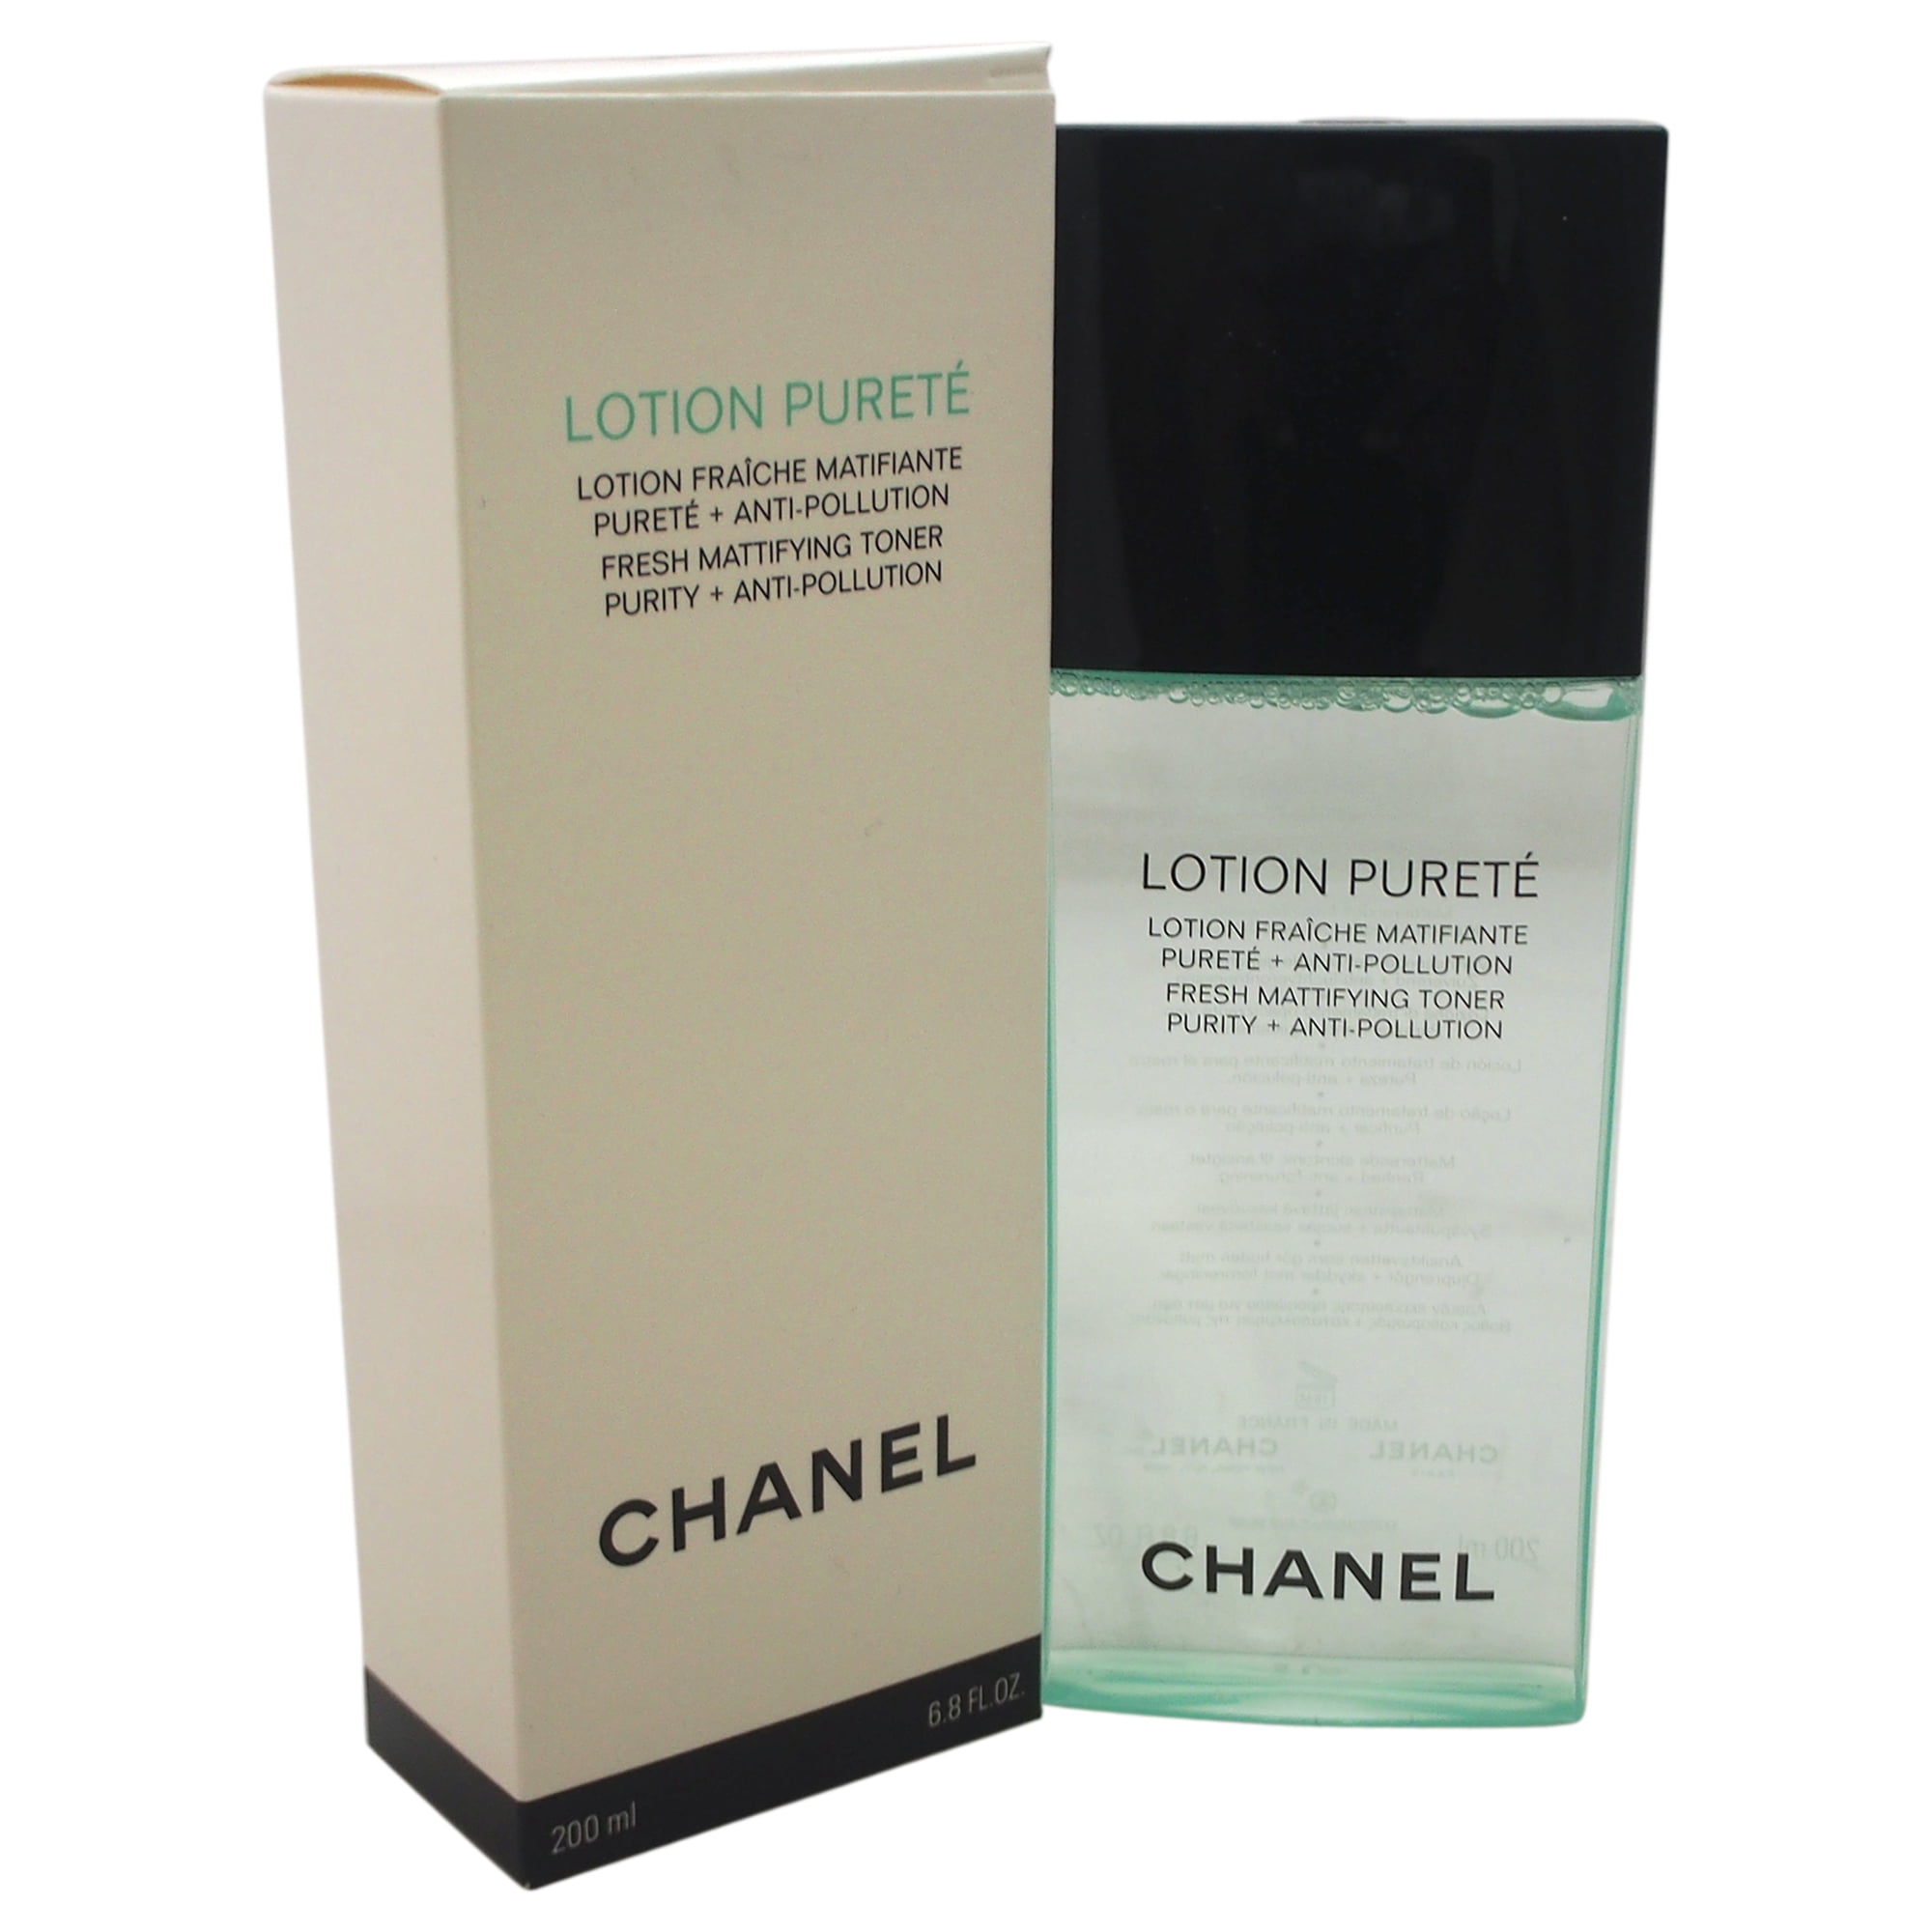 Jual Chanel Lotion Pureté - Jakarta Selatan - Chellz9